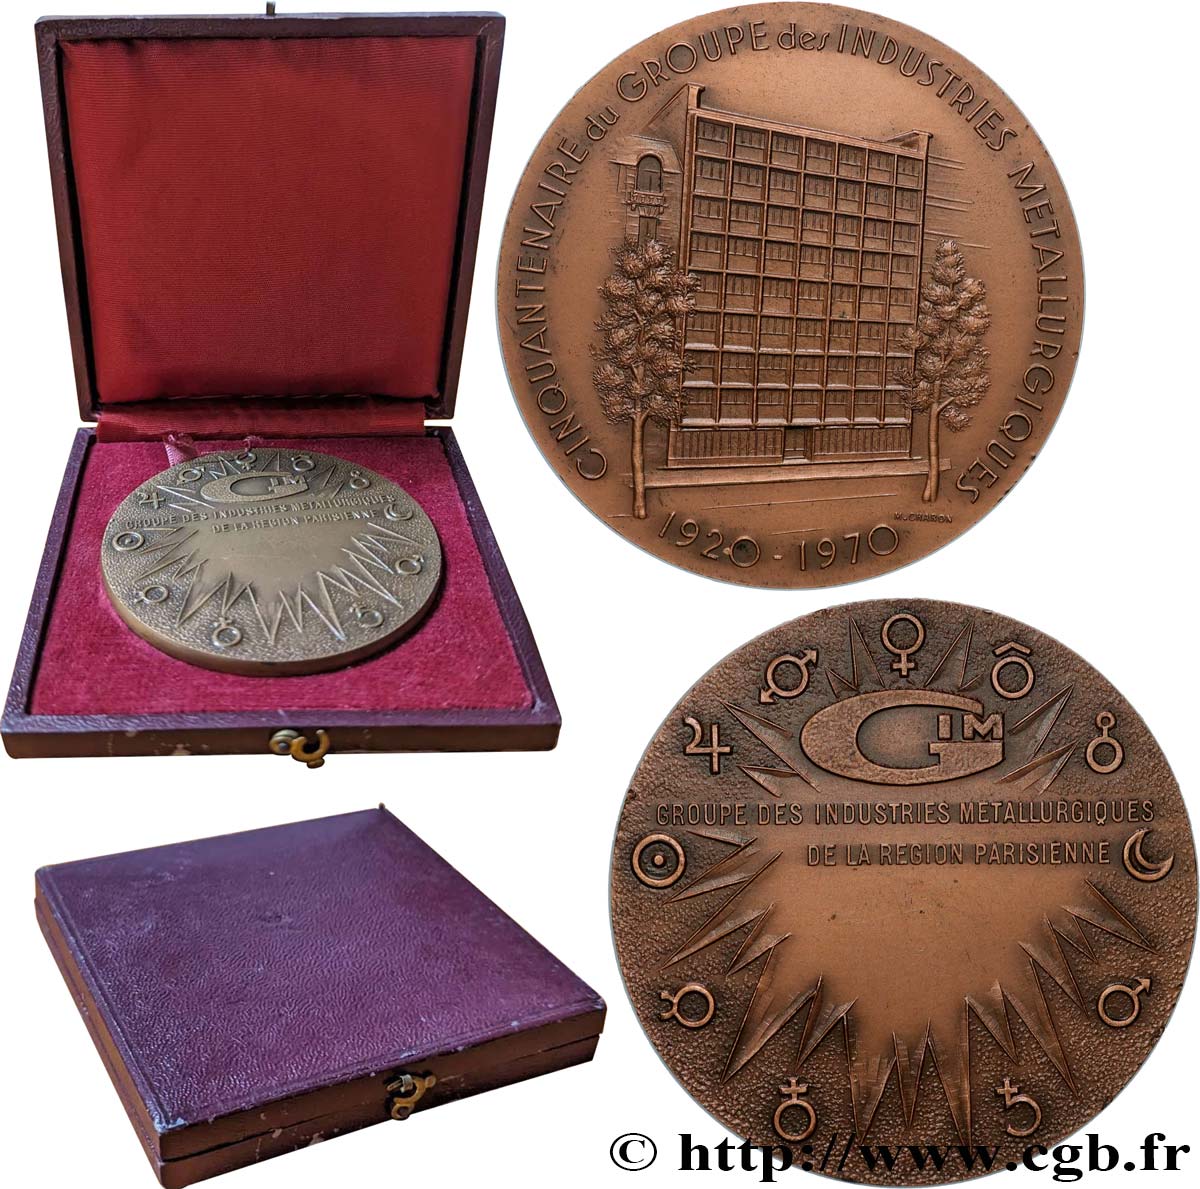 QUINTA REPUBBLICA FRANCESE Médaille, Cinquantenaire du groupe des industries métallurgiques SPL